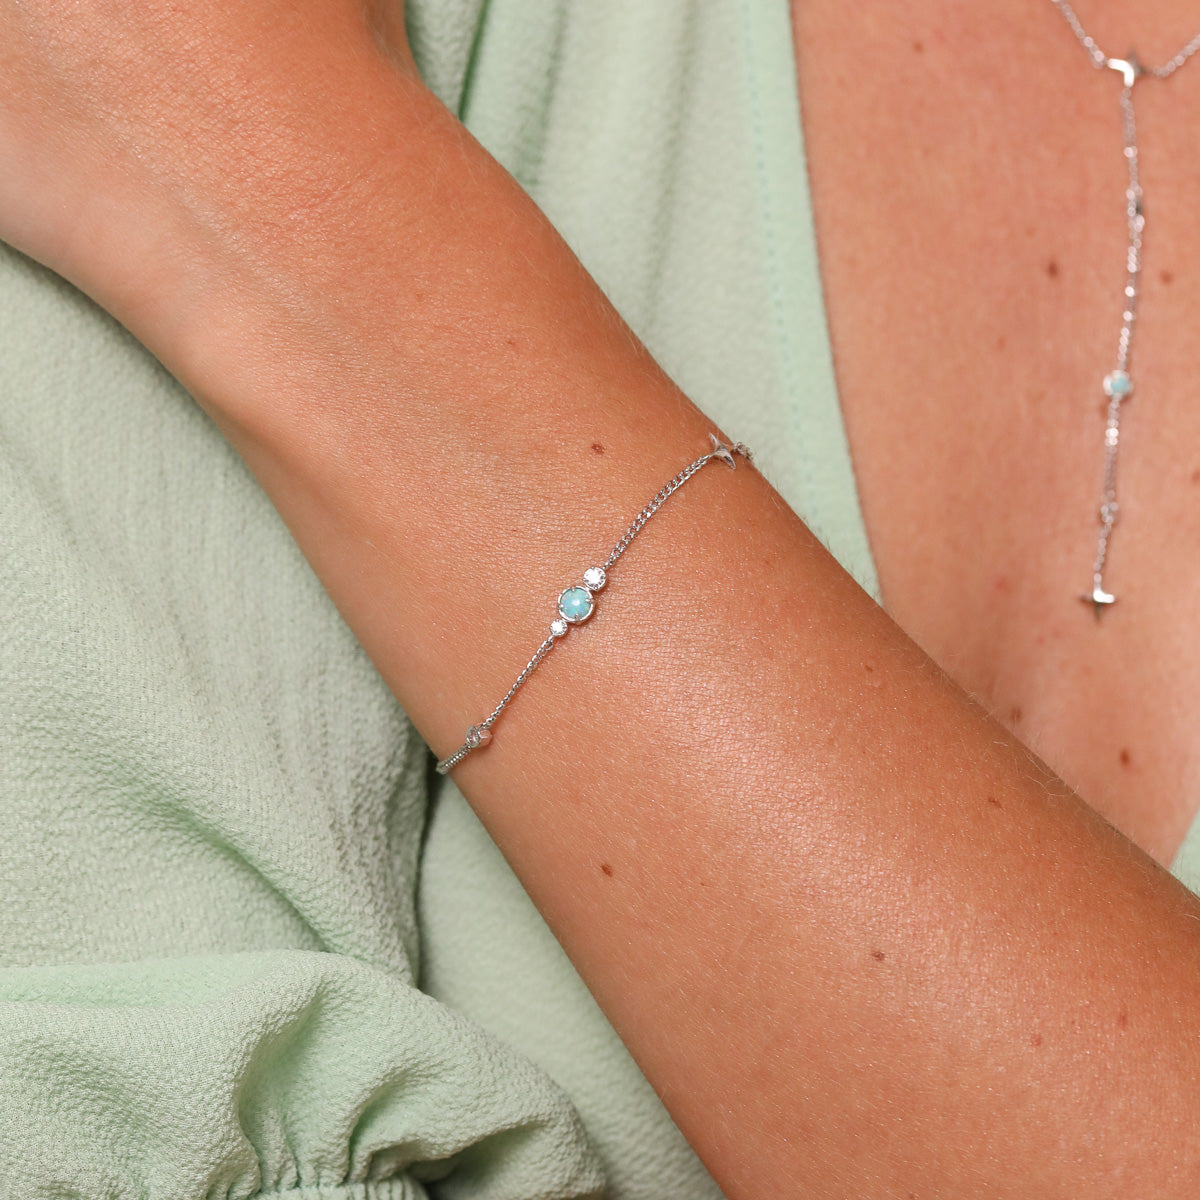 Cosmic Star Opal Bracelet in Silver worn